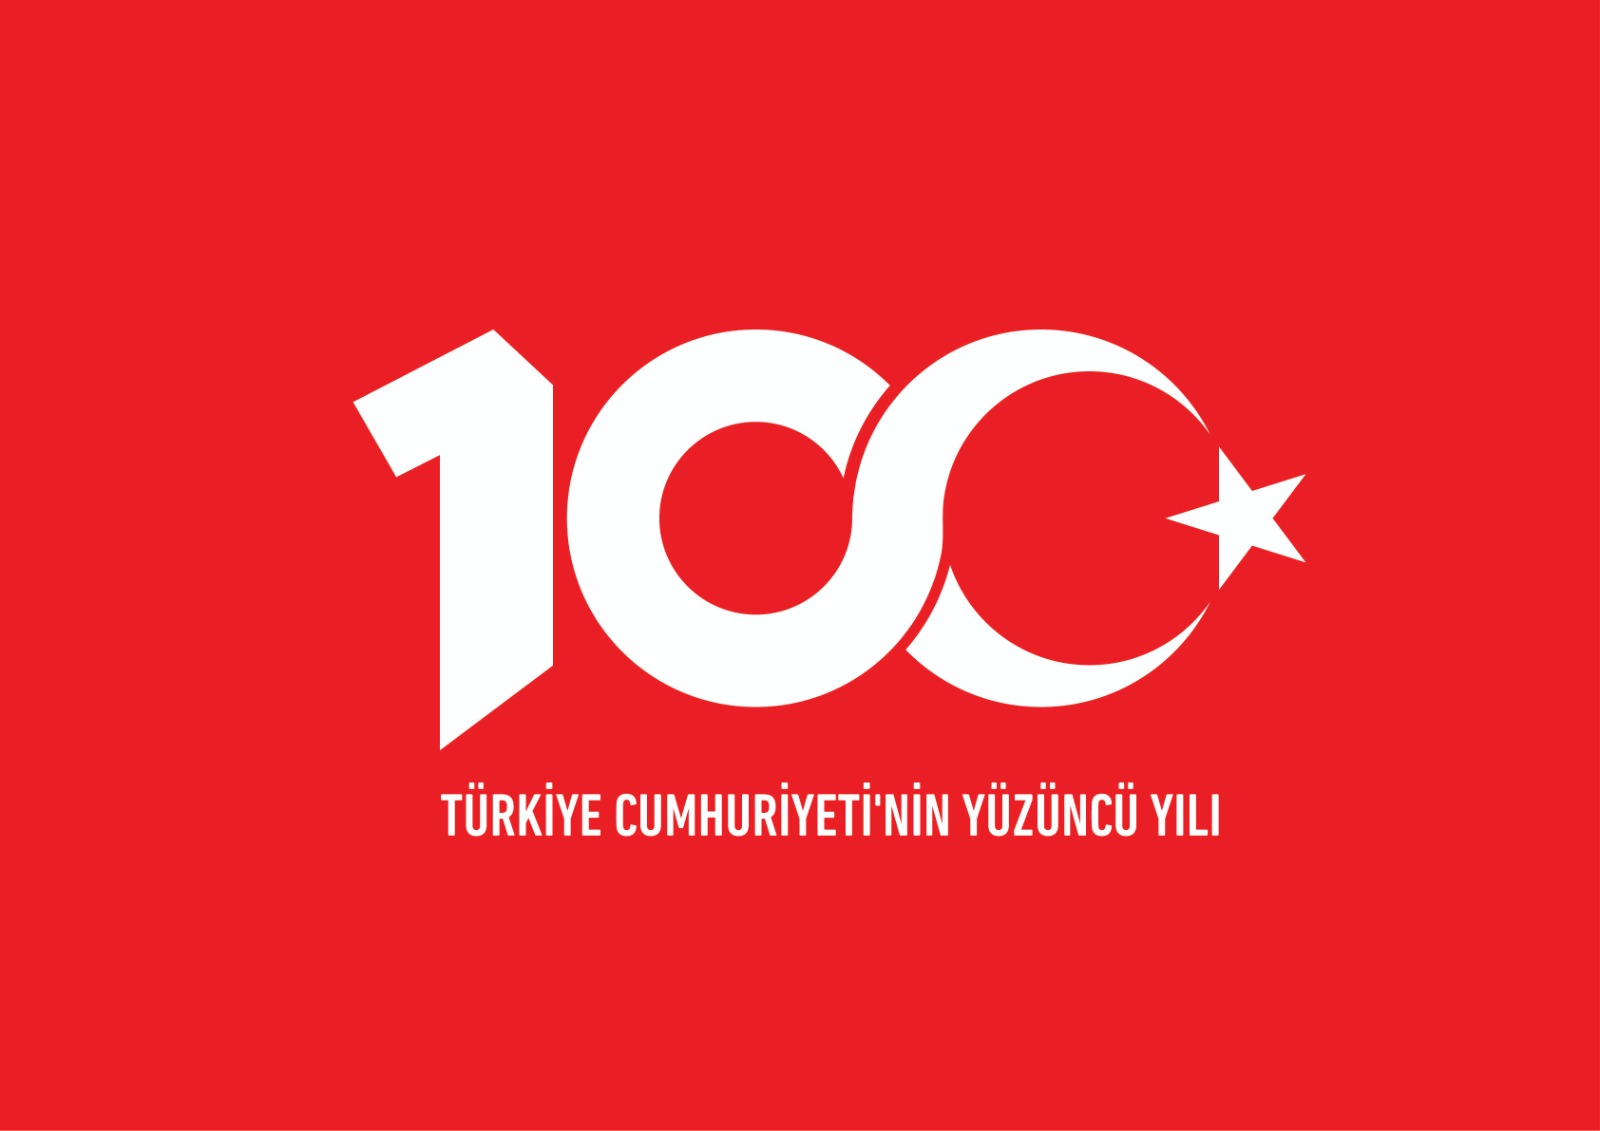 Türkiye Cumhuriyeti 100 yaşında